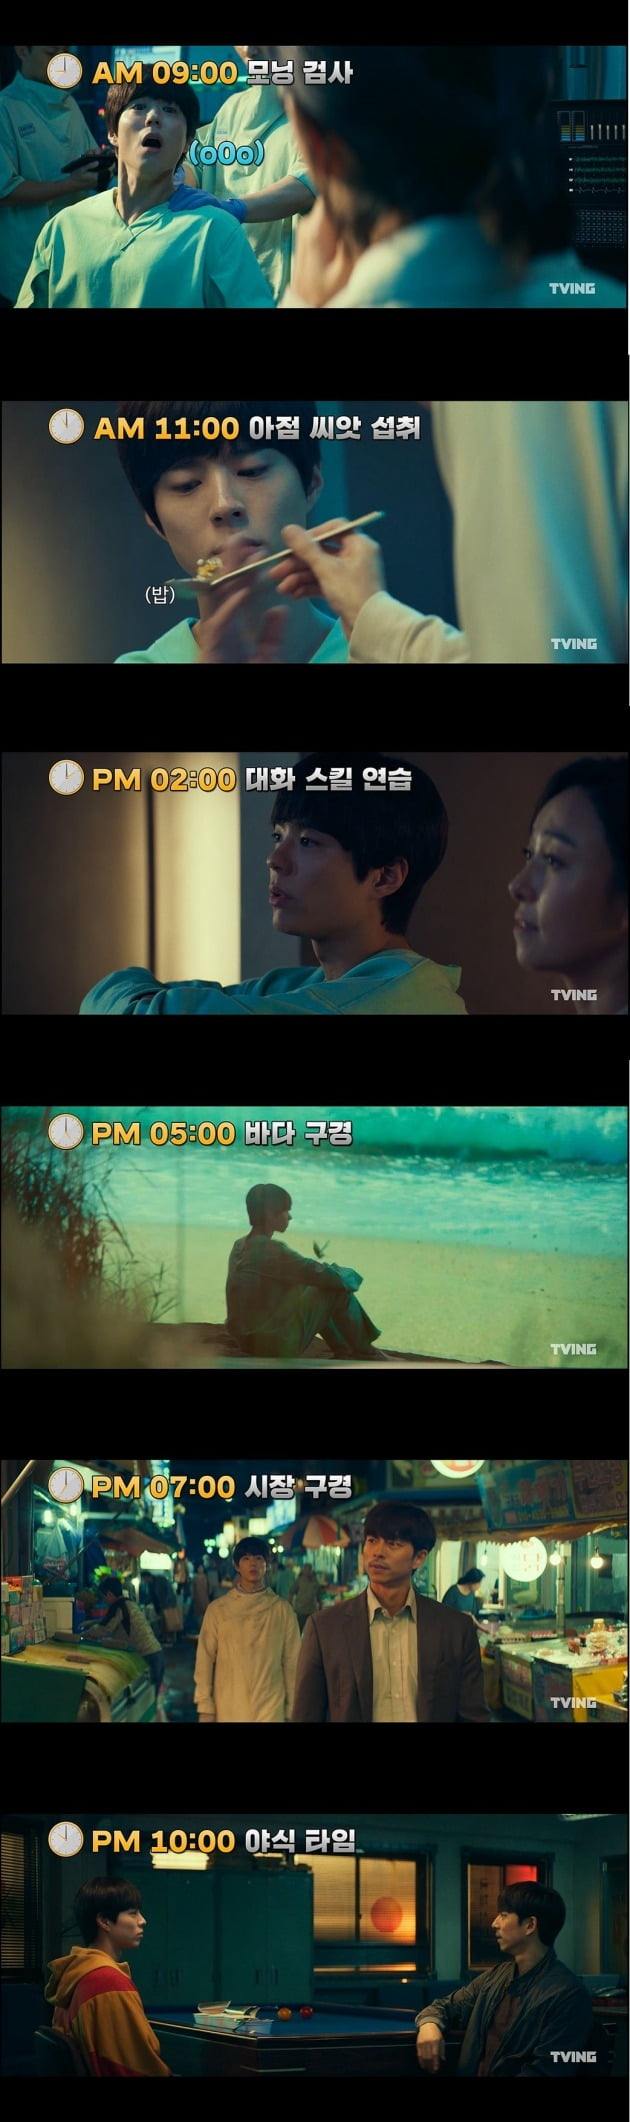 영화 '서복'의 '서복의 하루'를 소개하는 영상이 공개됐다. / 사진제공=CJ ENM